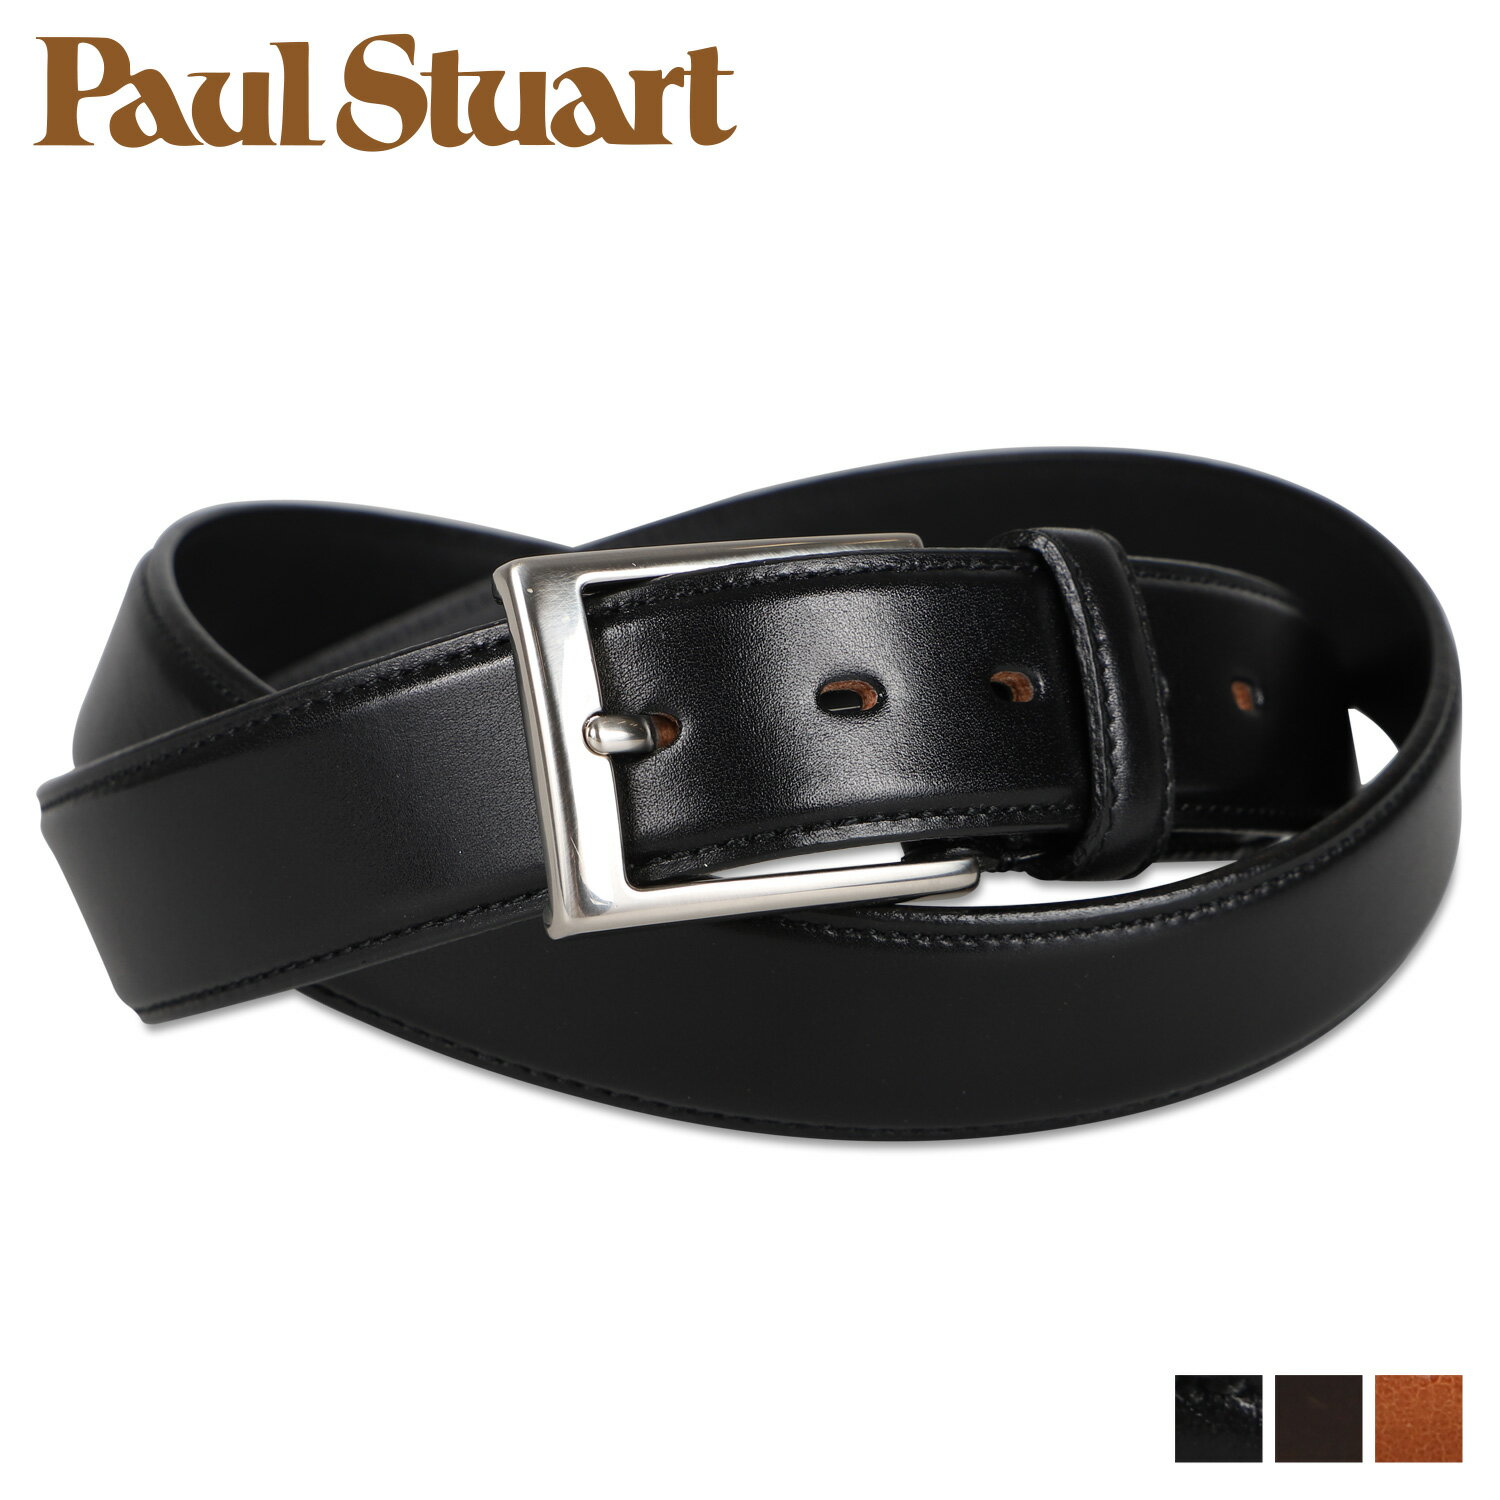 ポールスチュアート Paul Stuart ポールスチュアート ベルト メンズ 本革 BELT ブラック ダークブラウン ブラウン 黒 SB00412